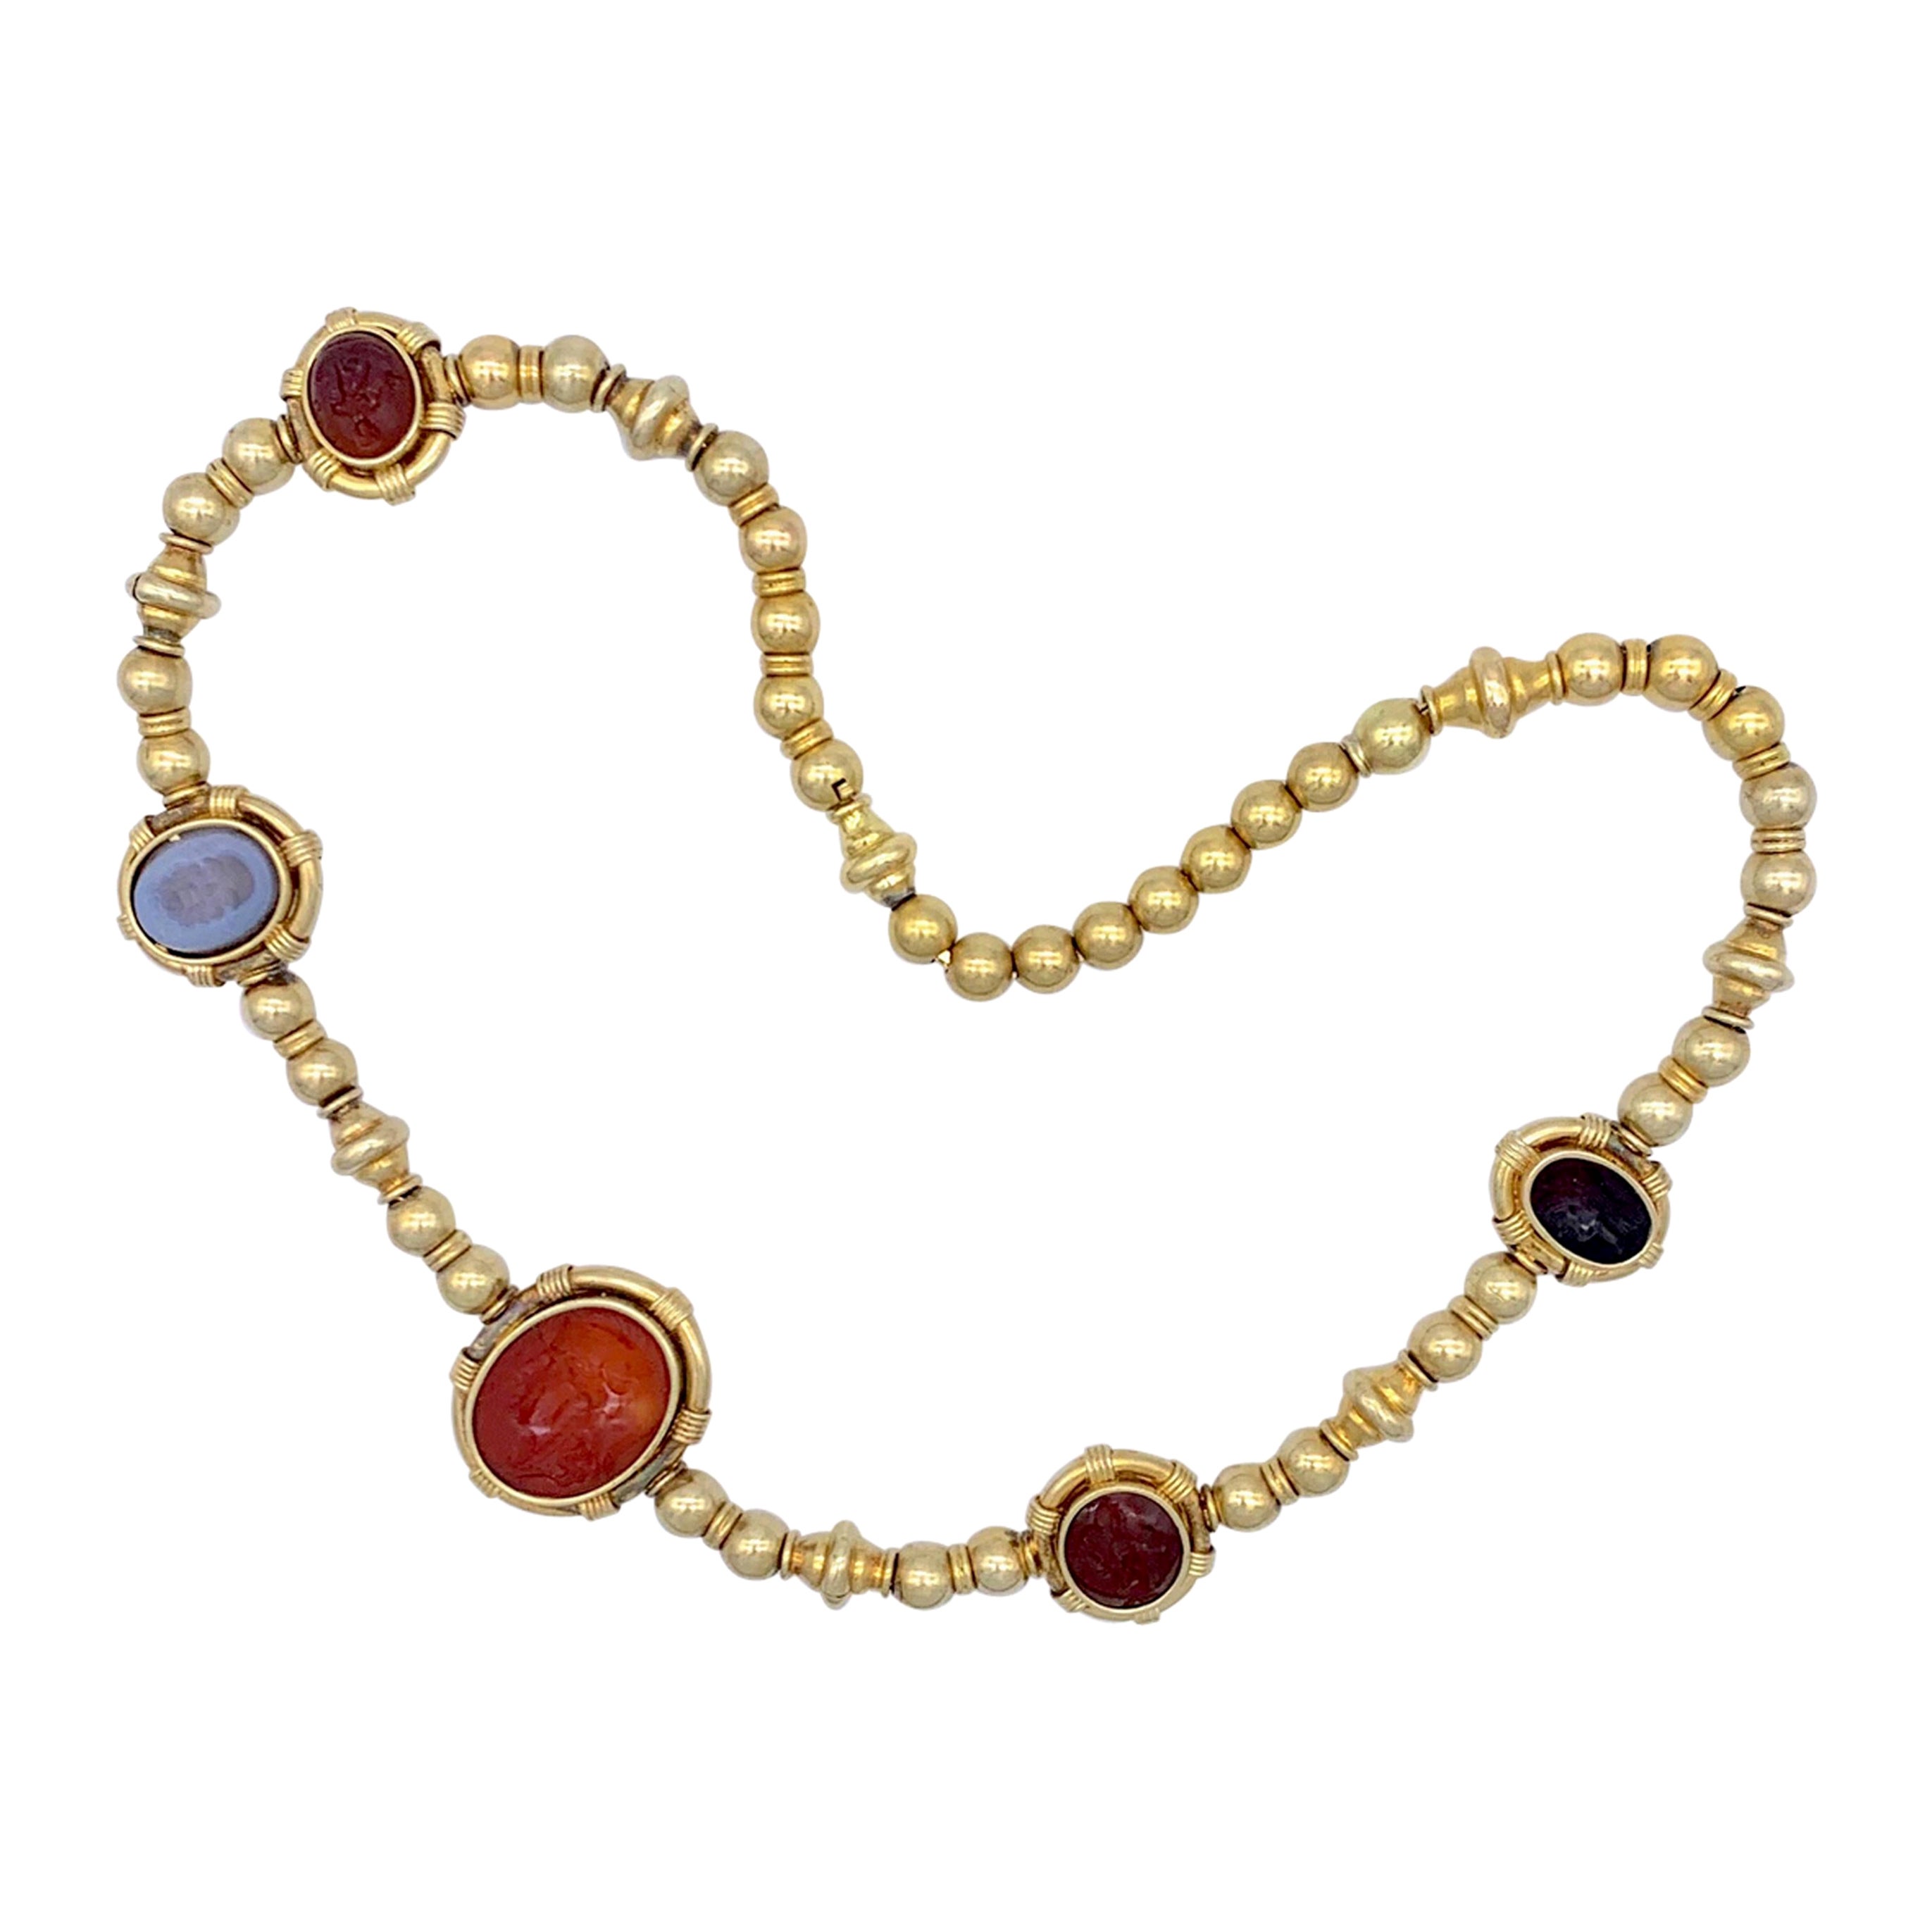 Antique Hardstone Intaglio Necklace 14 Karat Gold Ball Chain